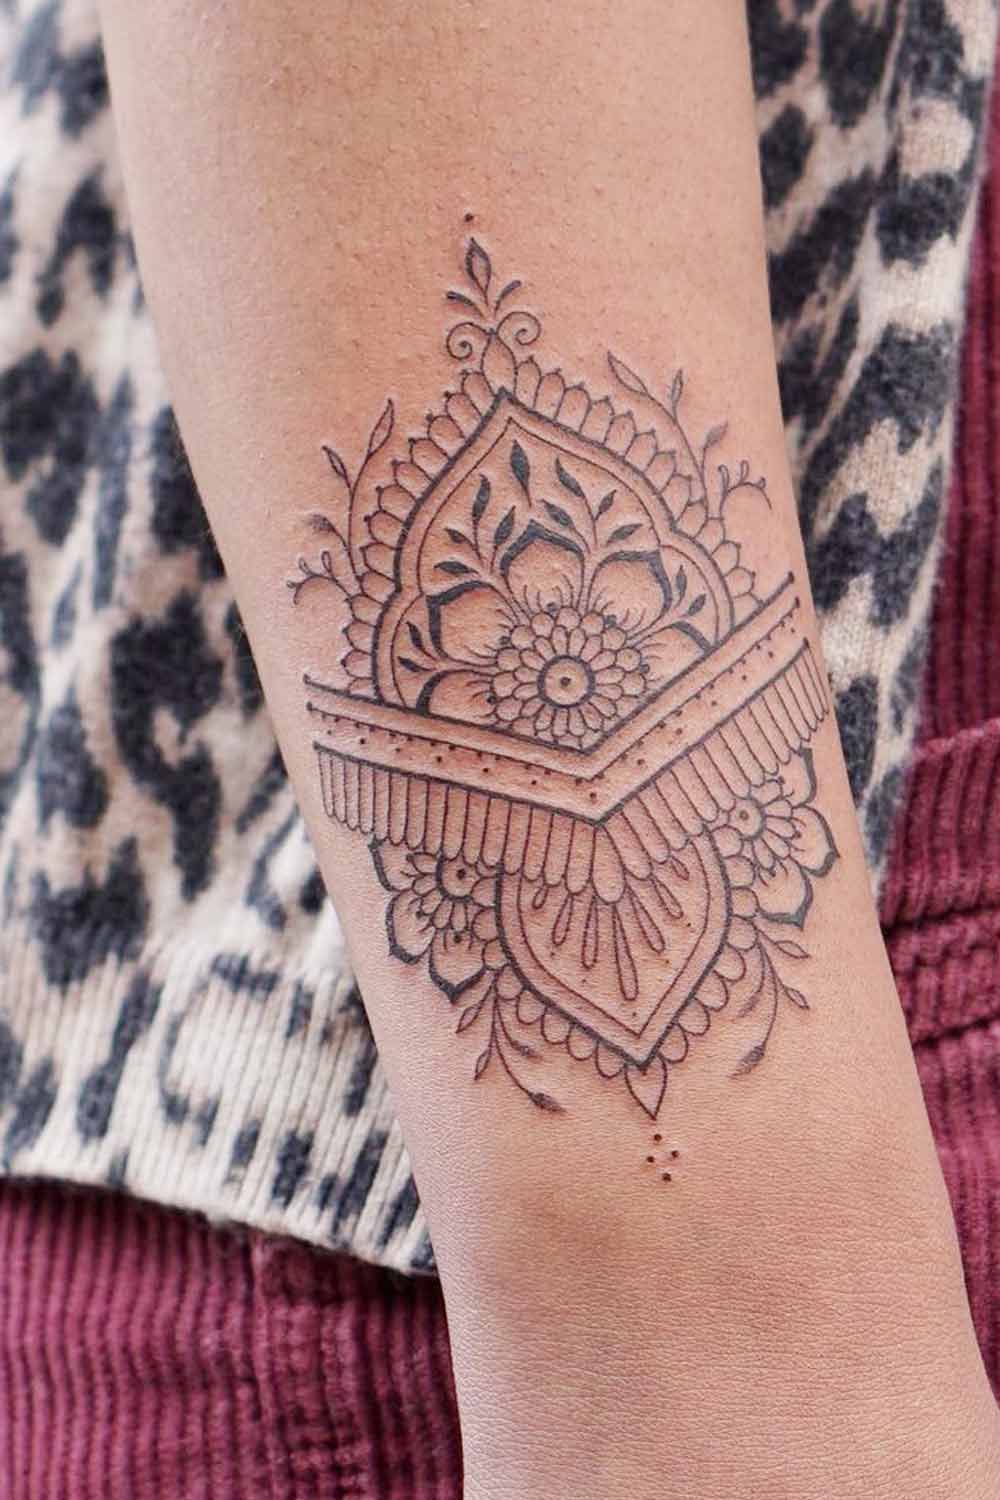 Forearm mandala tattoo by AntoniettaArnoneArts on DeviantArt